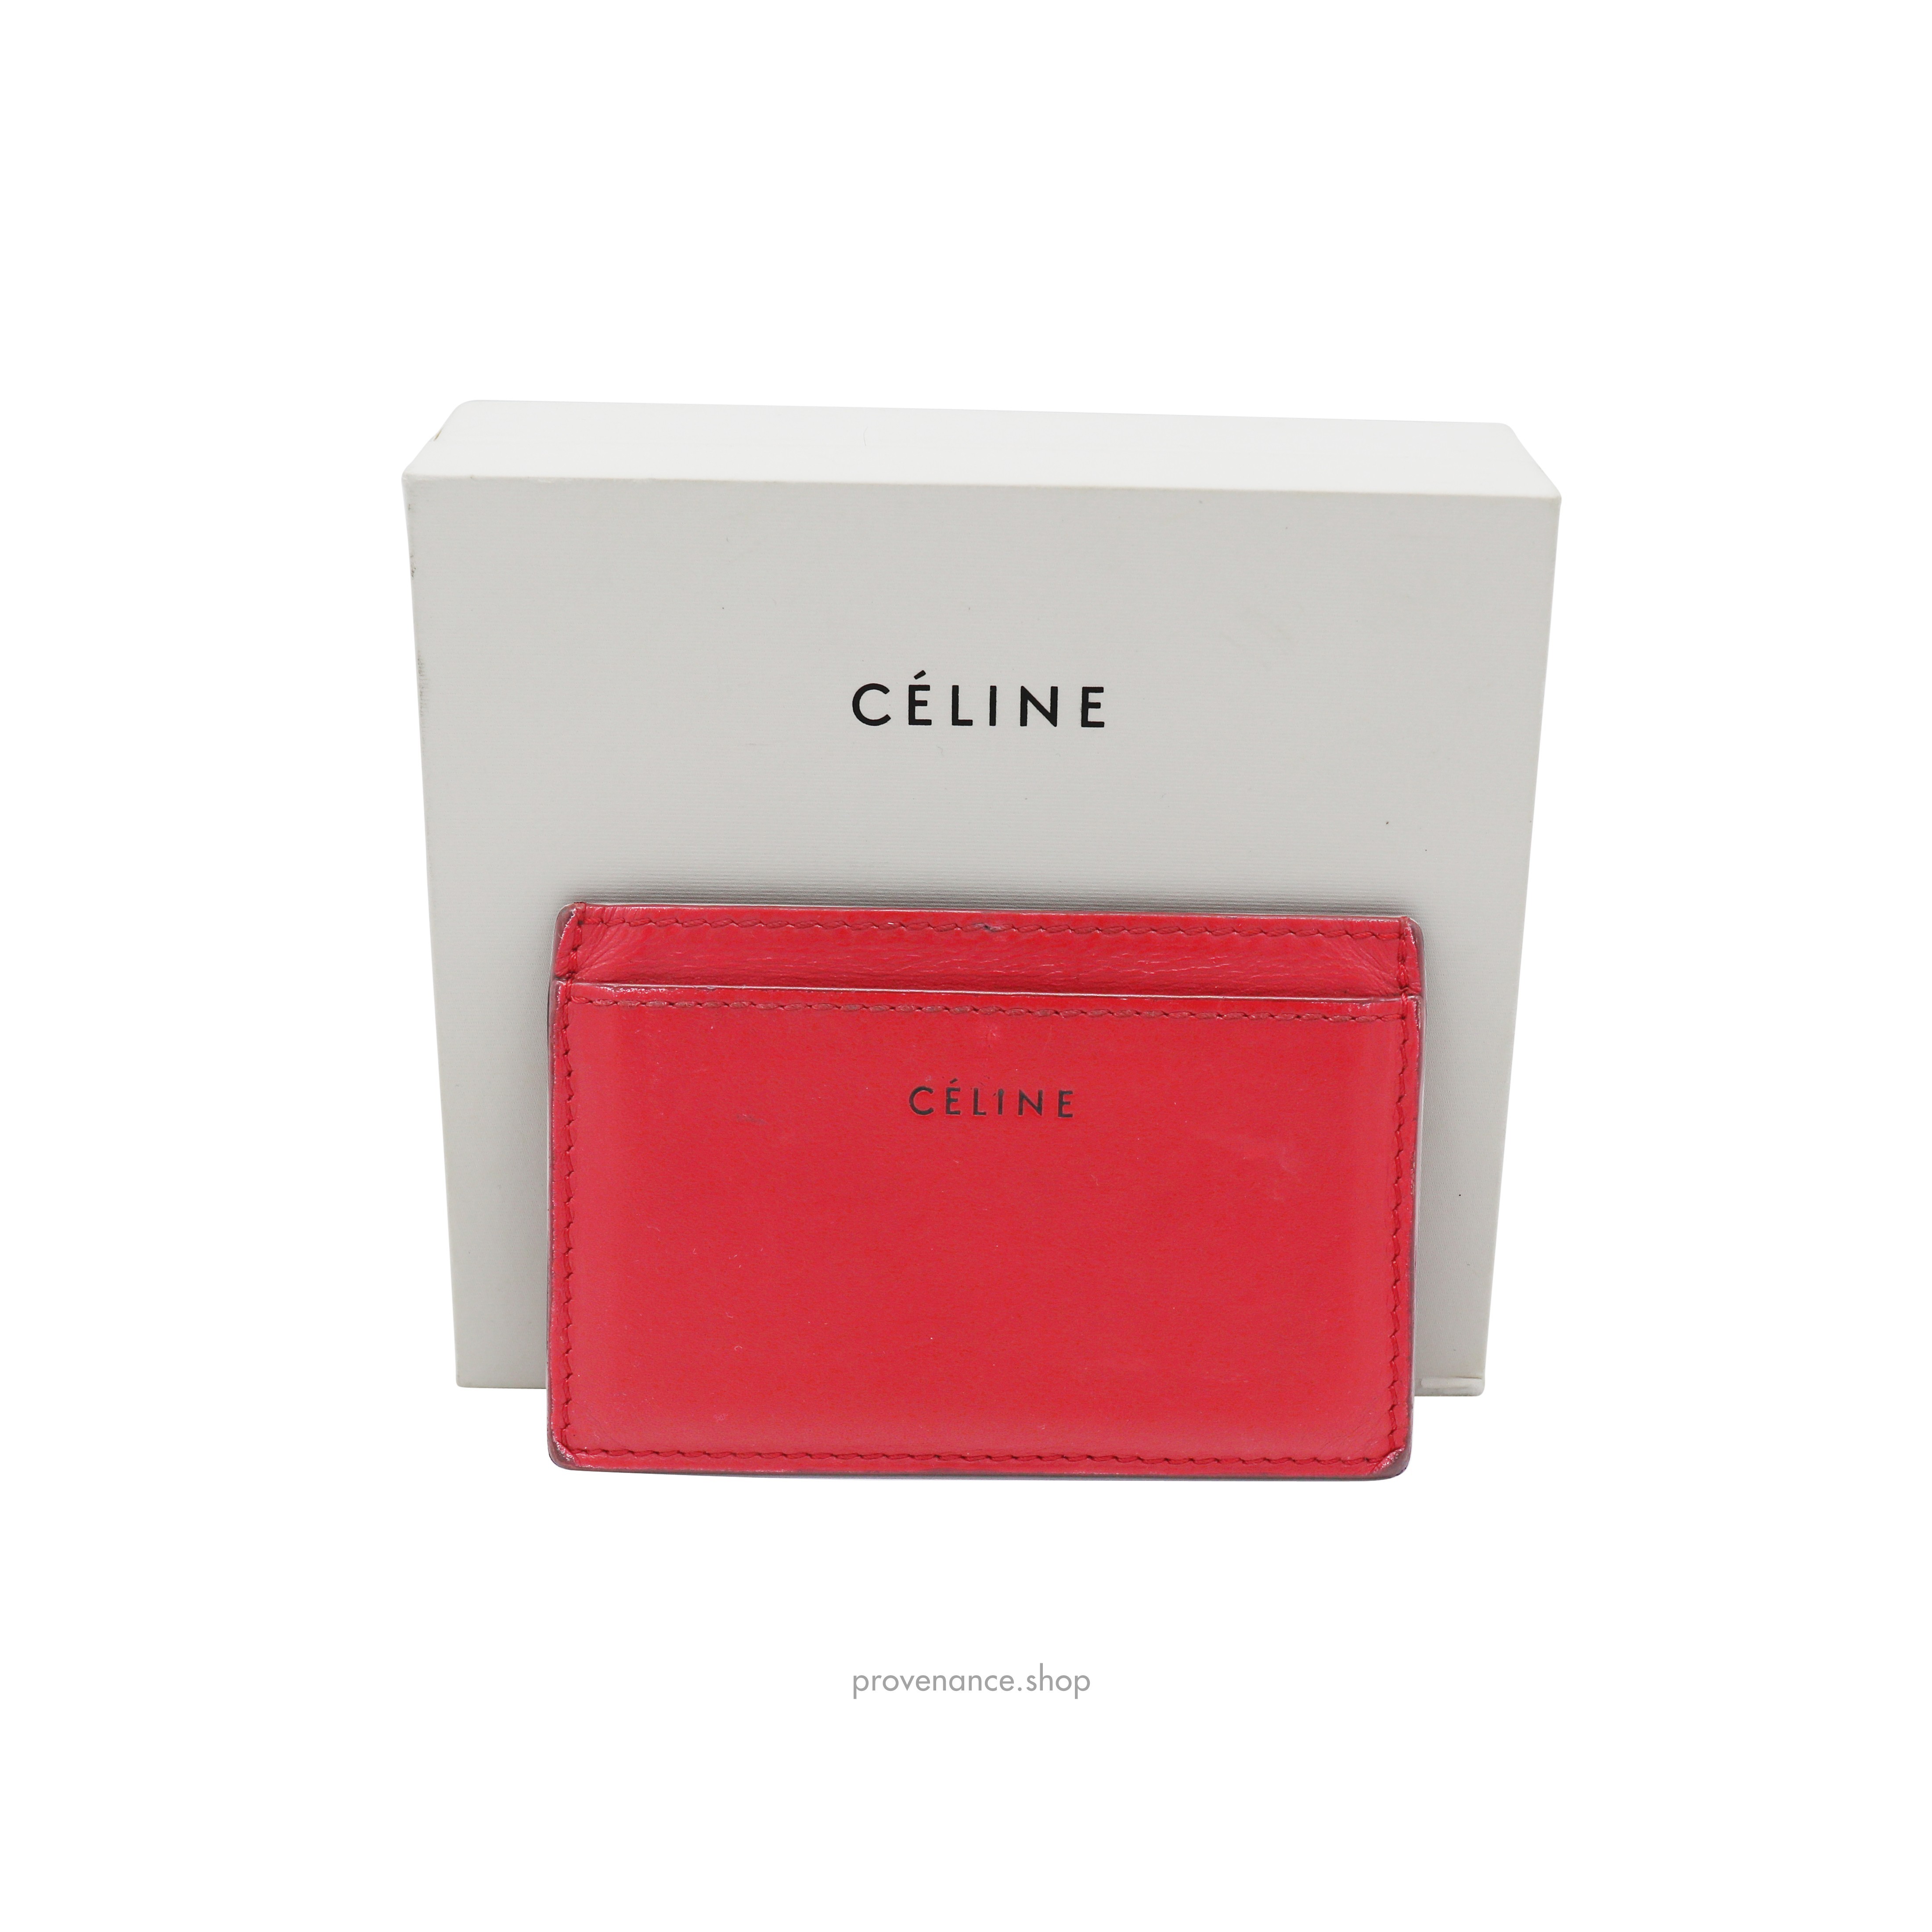 Celine Card Holder Wallet - Red Leather - 1